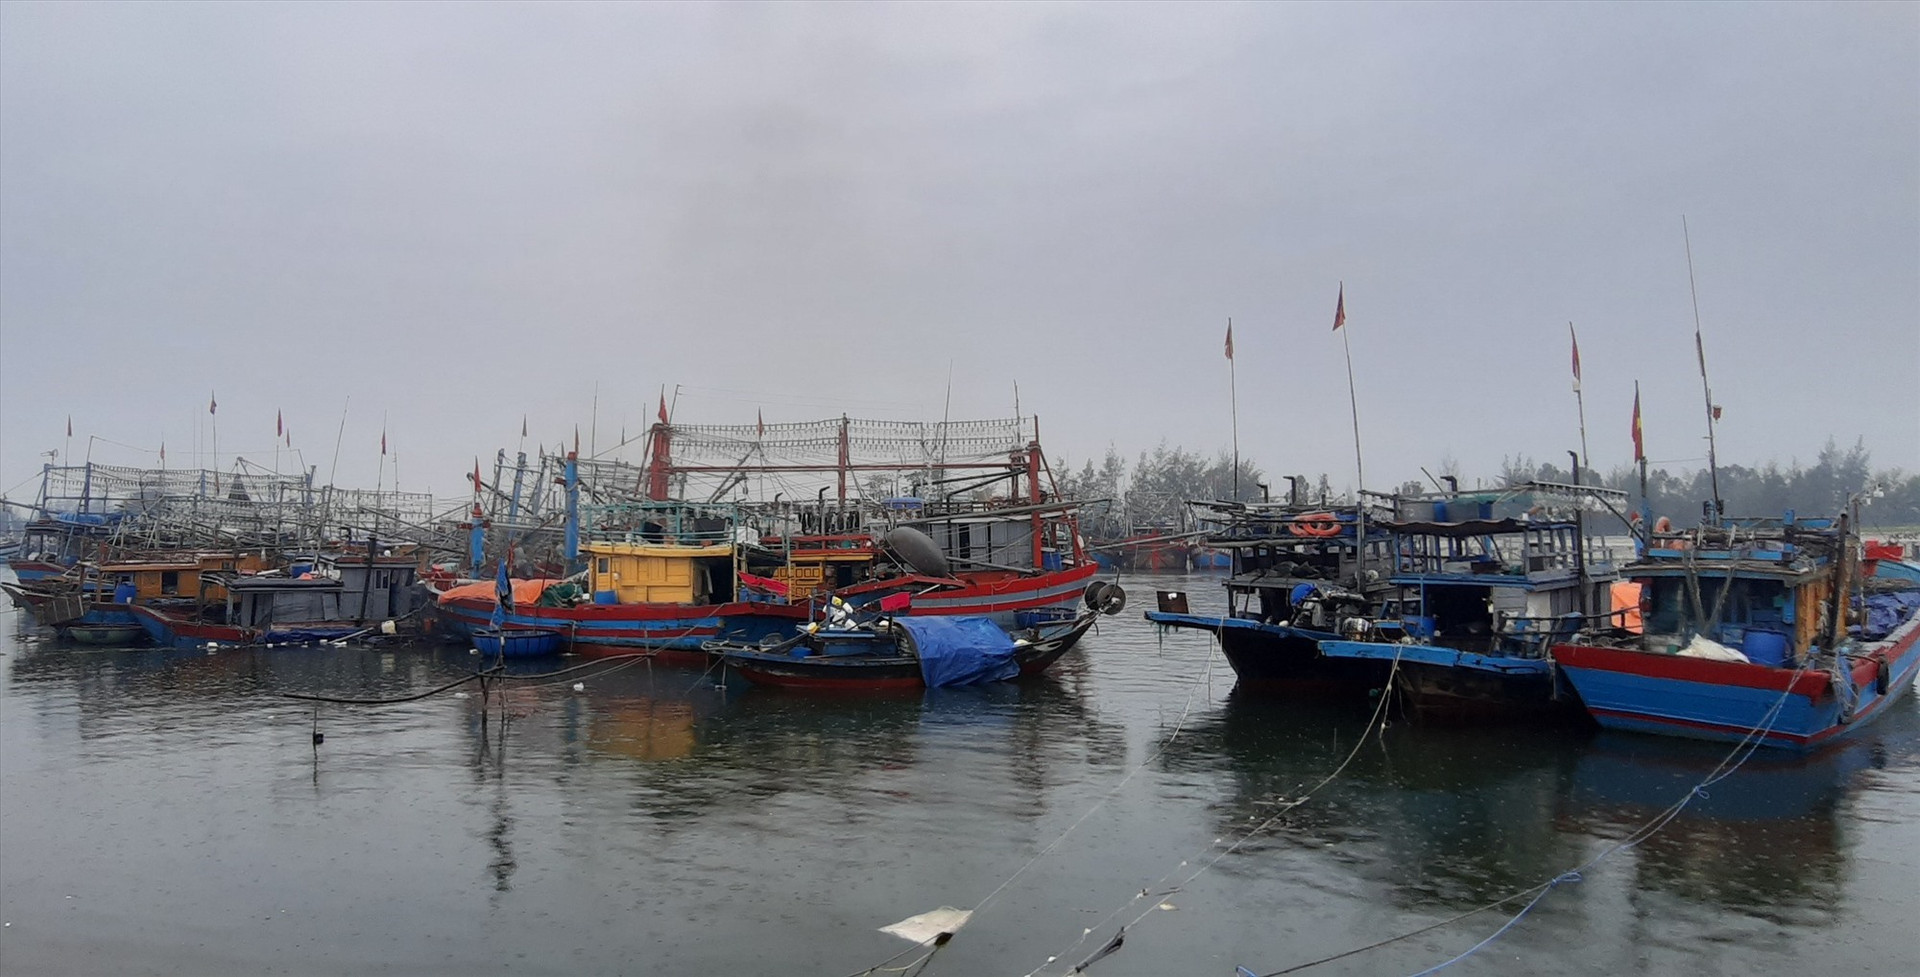 Quảng Nam hiện có 37 tàu cá hoạt động trên biển. Ảnh: CTV